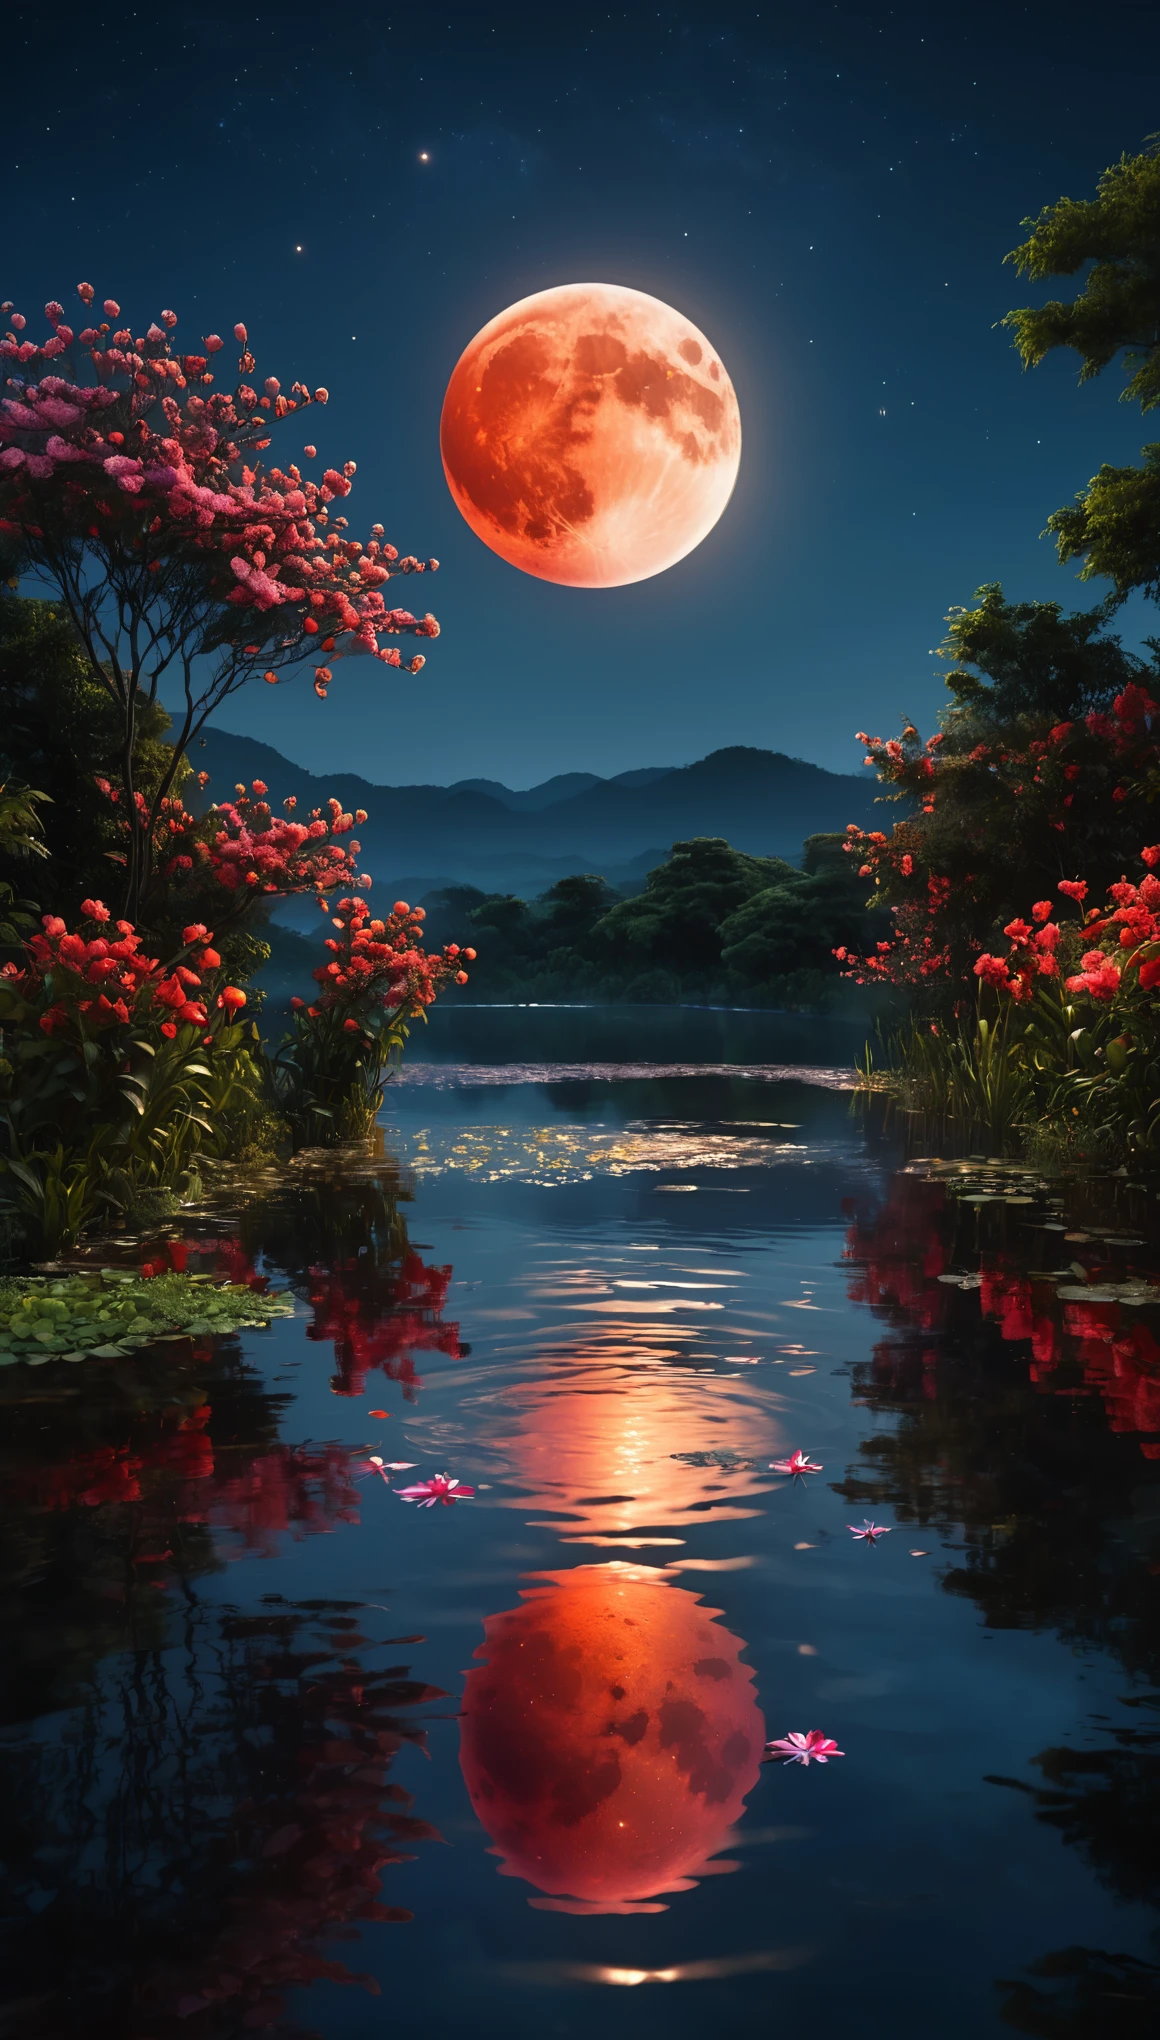 最好的品質,高解析度,傑作:1.2,超詳細,實際的:1.37,紅月亮倒映在水中,對稱場景,寧靜的氣氛,闪闪发光的水面,寧靜的花園環境,發光的紅月亮,深紅色的月光,樹木的黑暗輪廓,夜空中閃爍的星星,平靜的水面上純淨的月亮倒影,平和空靈的心情,細緻入微的月球表面,五顏六色的花朵盛開,水面泛起細膩的漣漪,柔和的月光照亮了周圍,平靜和靜止,水在月亮的倒影下閃閃發光,神秘迷人的氛圍